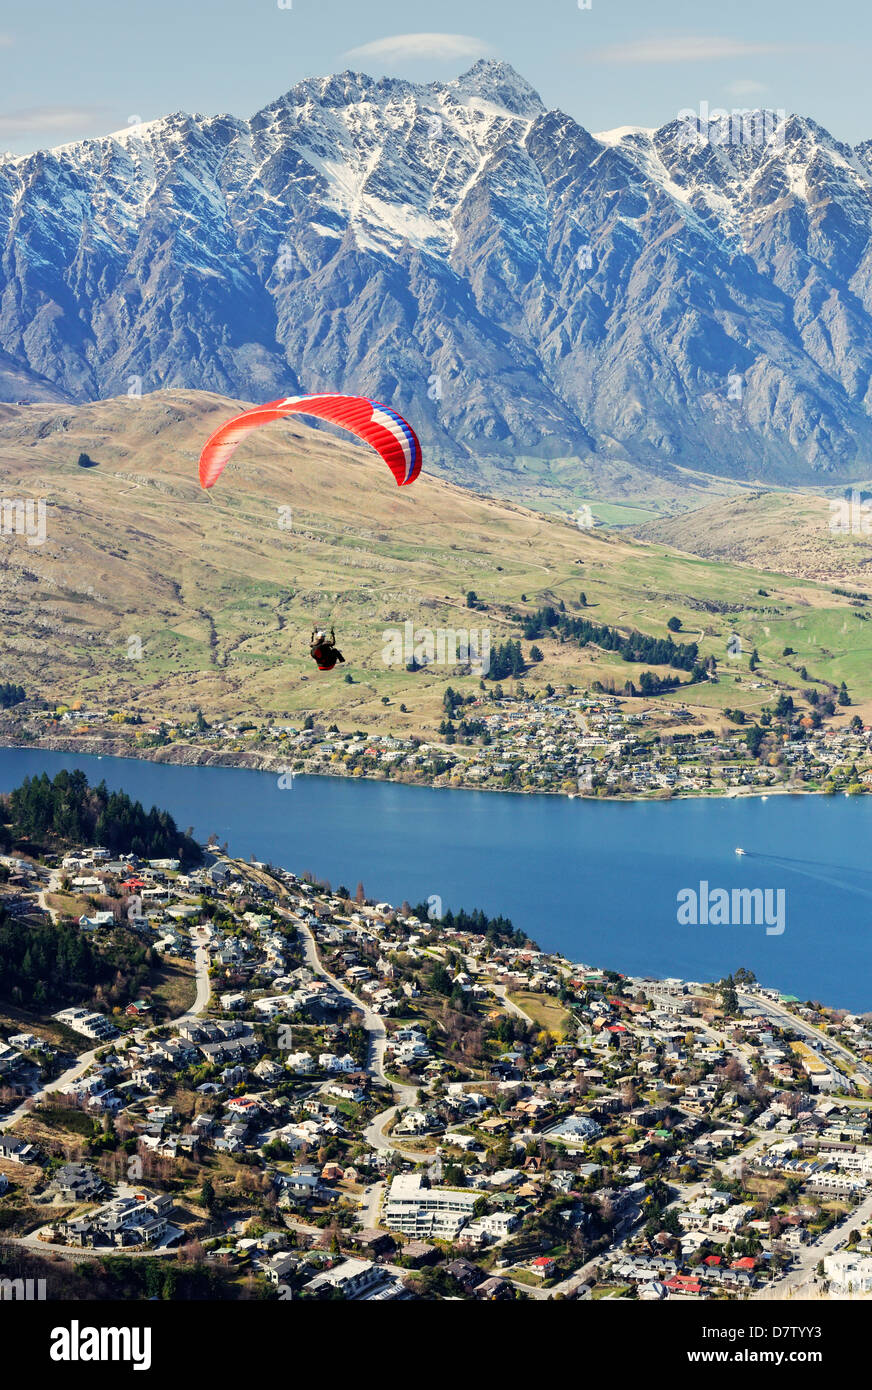 Parachute sur Queenstown, Queenstown, Otago, île du Sud, Nouvelle-Zélande Banque D'Images